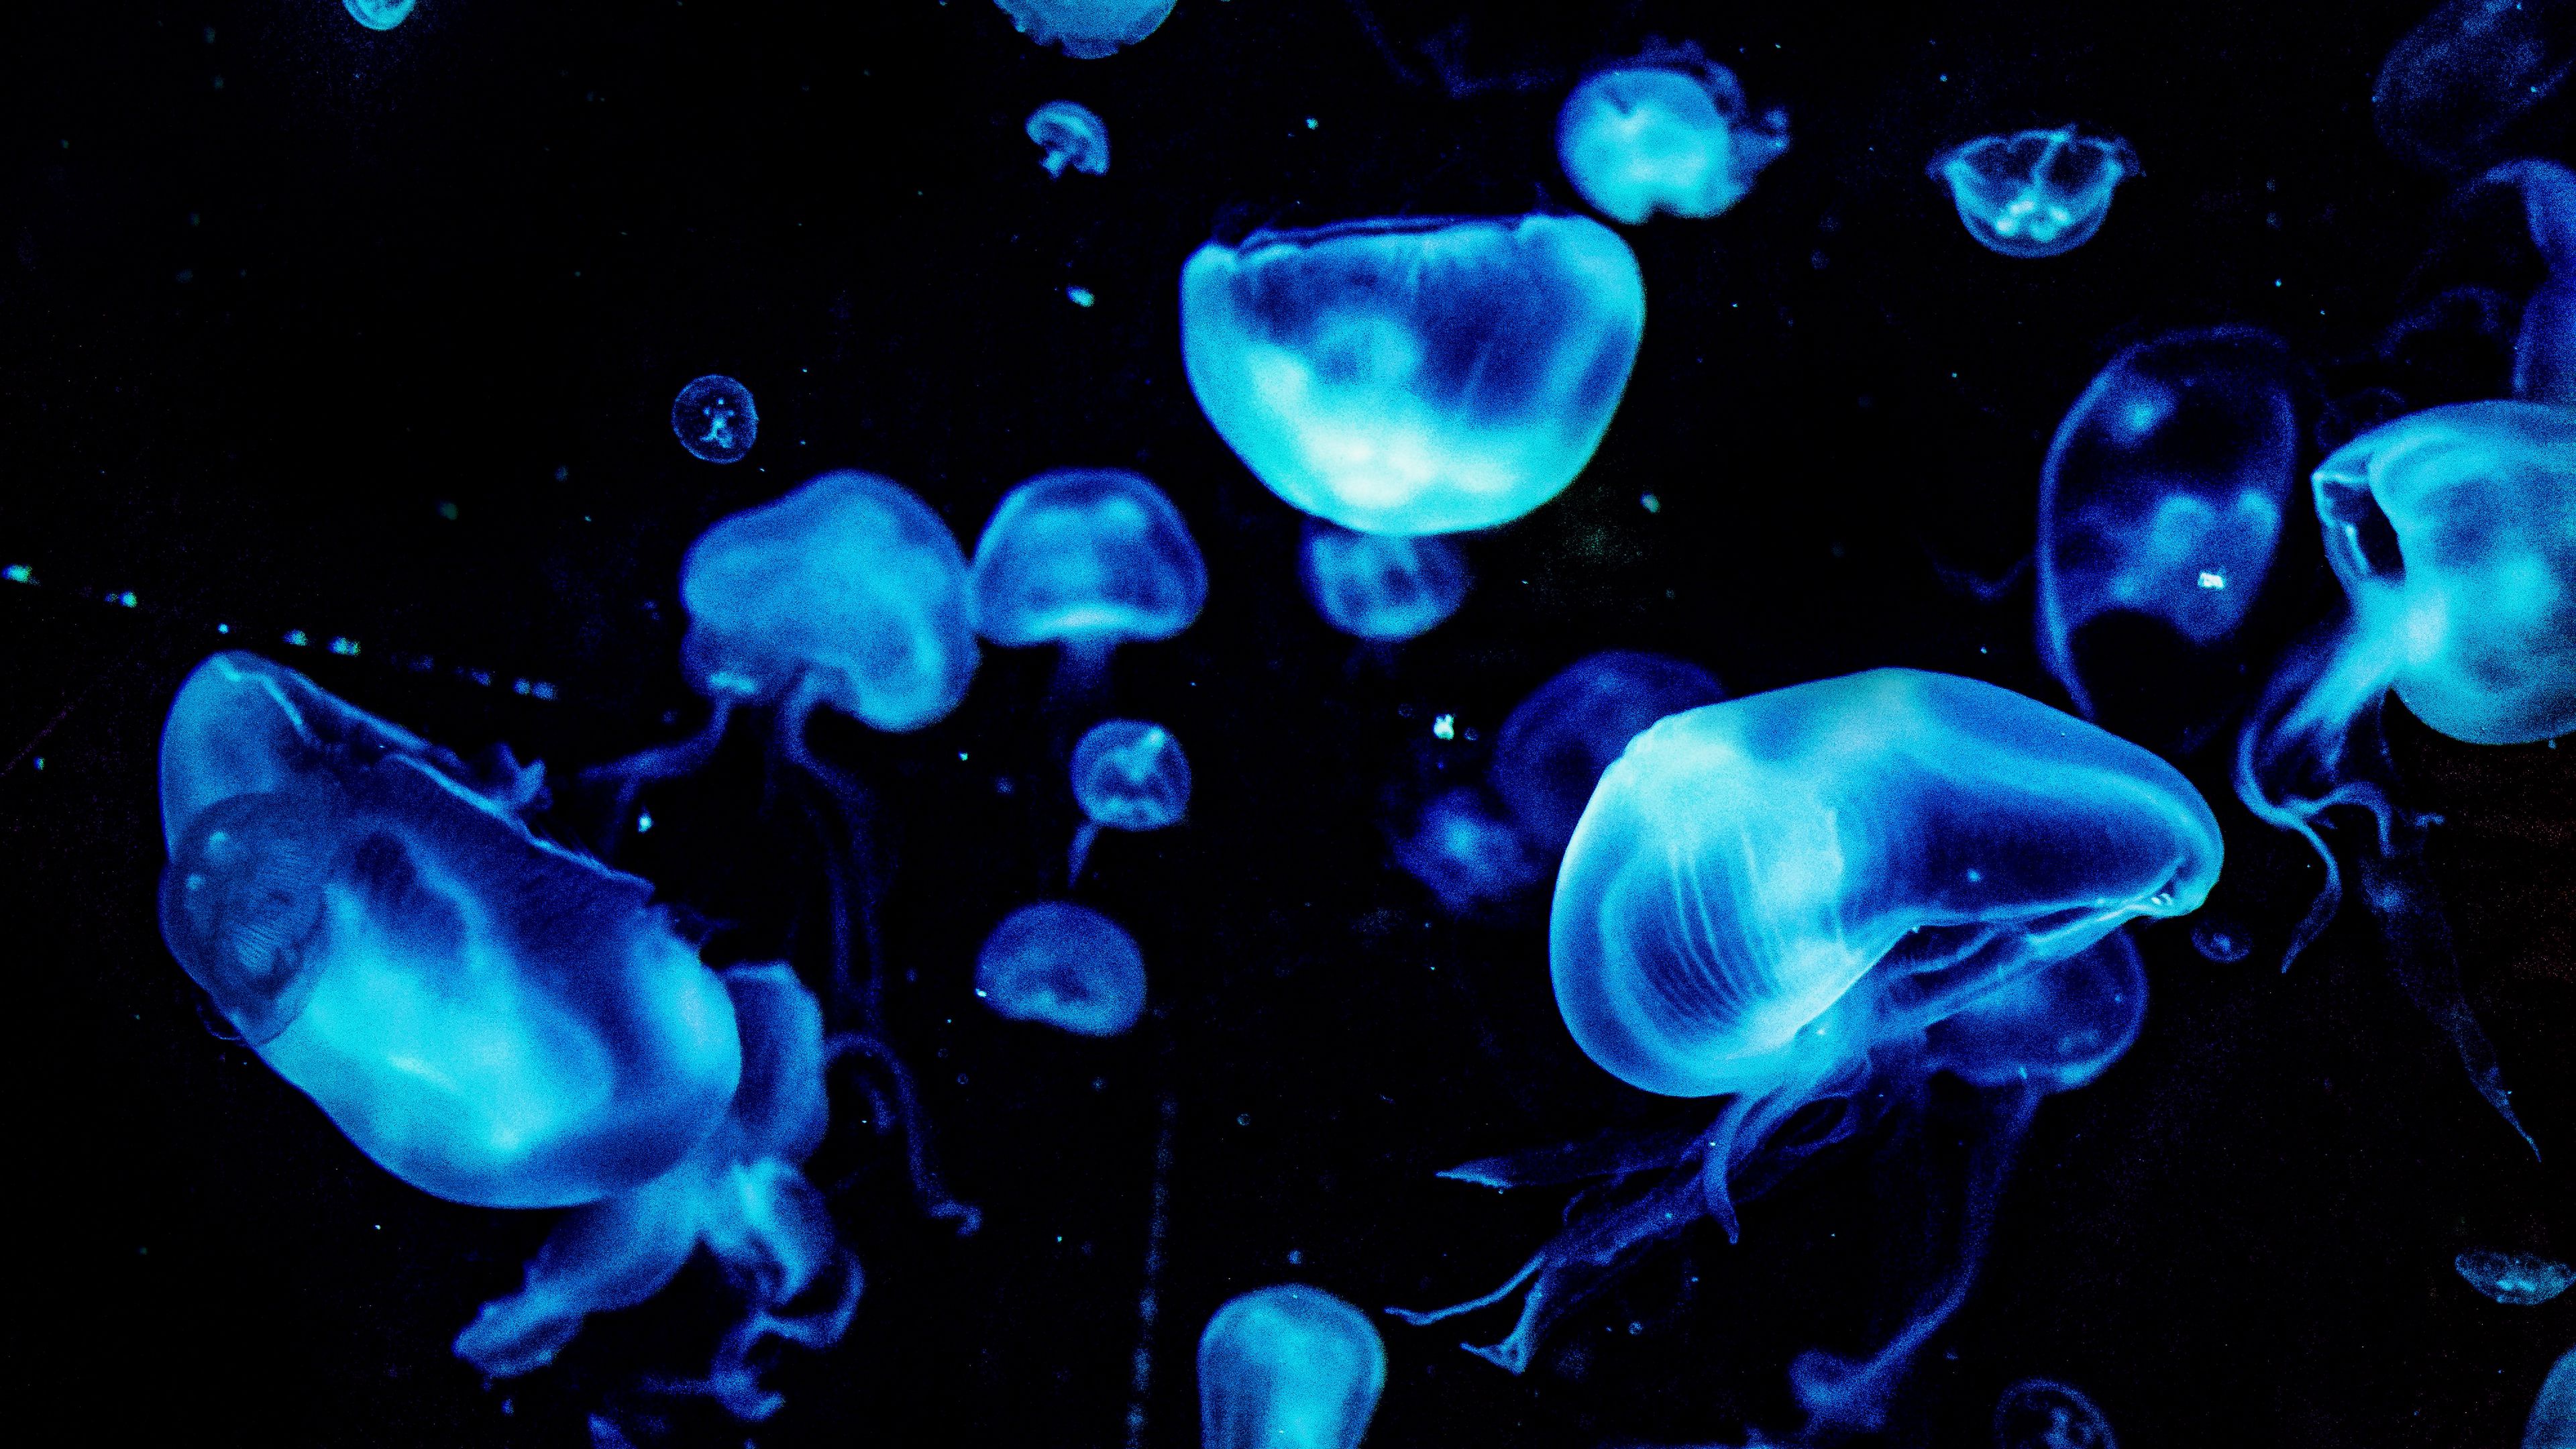 Download wallpaper 3840x2160 jellyfish, blue, glow, underwater, dark 4k uhd 16:9 HD background